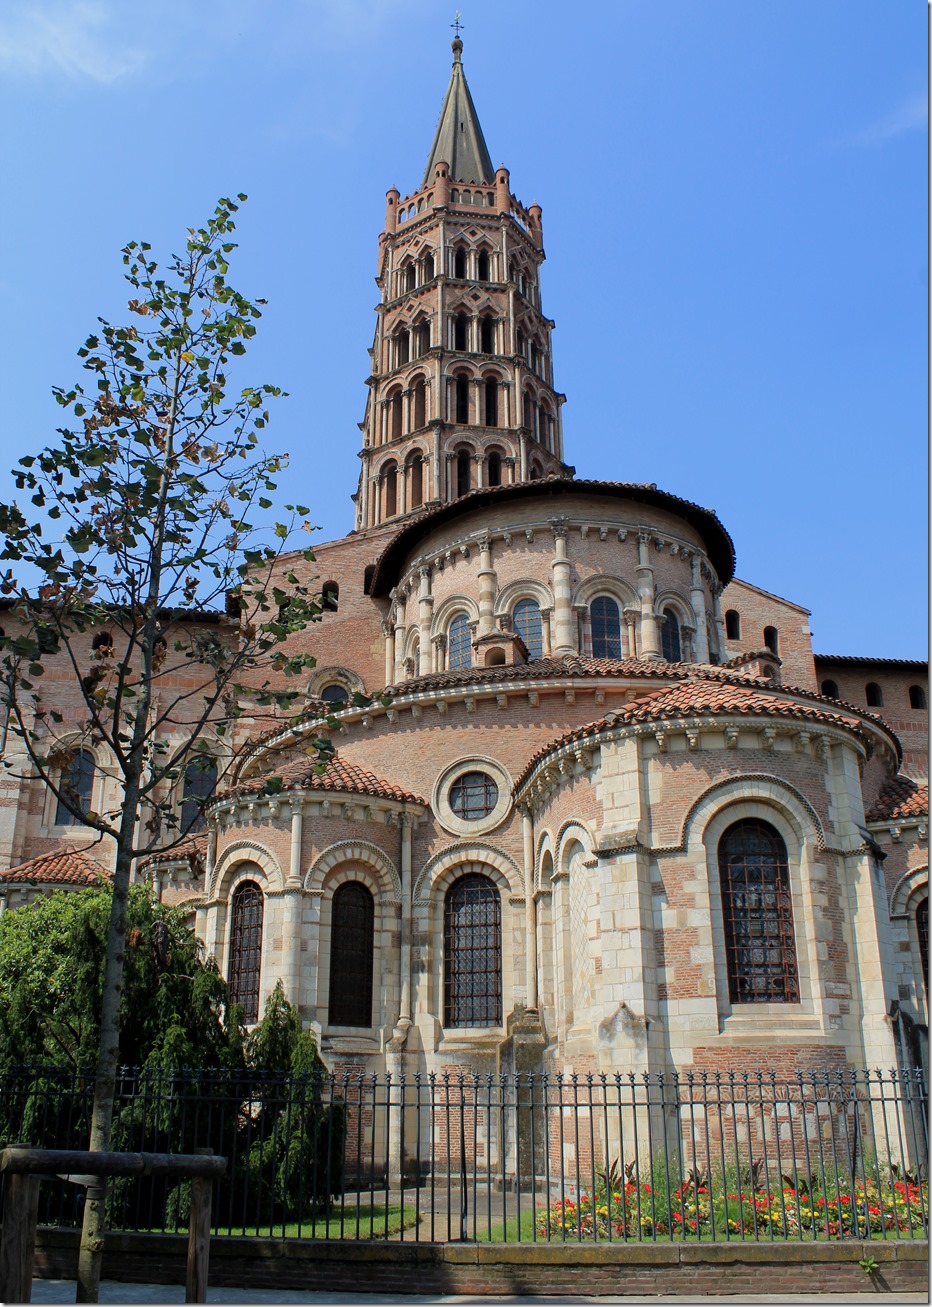 The Saint Sernin basilica